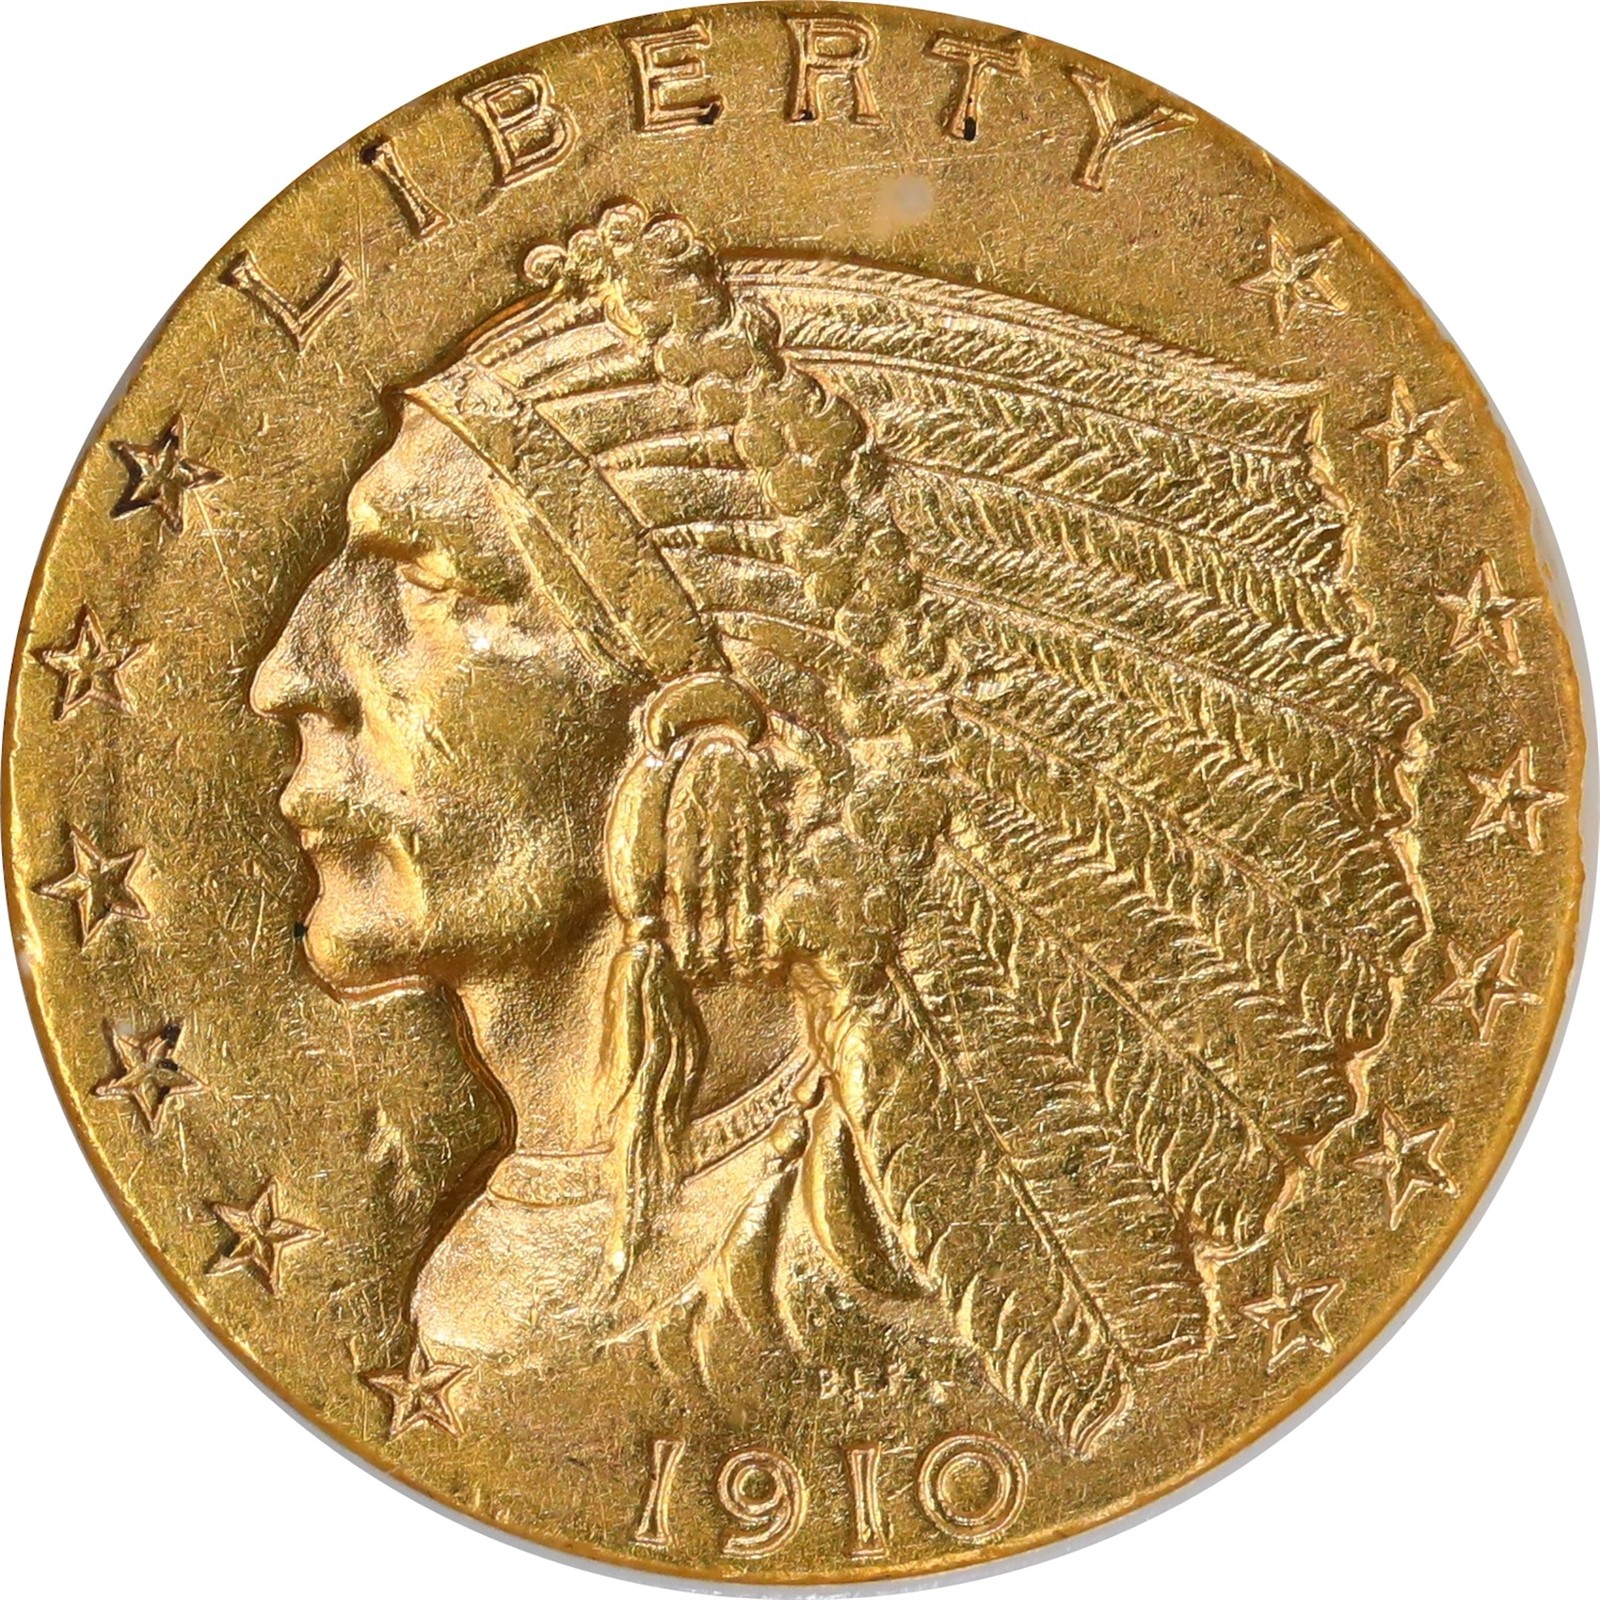 USA. Indian Head Quarter Eagle ($2.5) 1911 AU